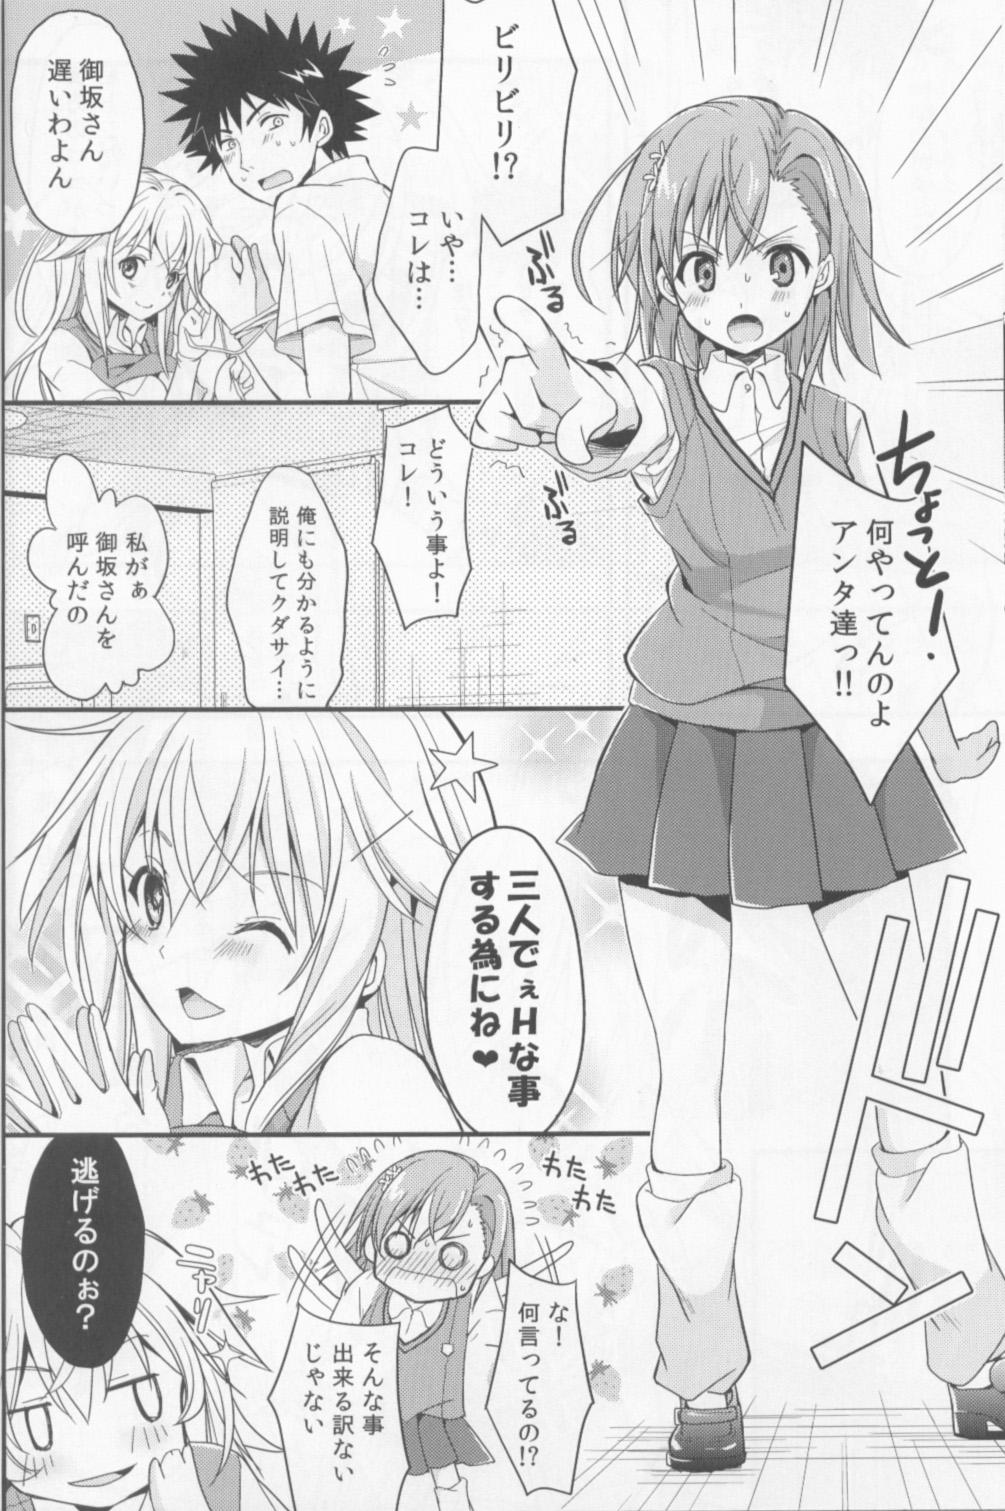 Suck Shiyouyo! - Toaru kagaku no railgun Pene - Page 7